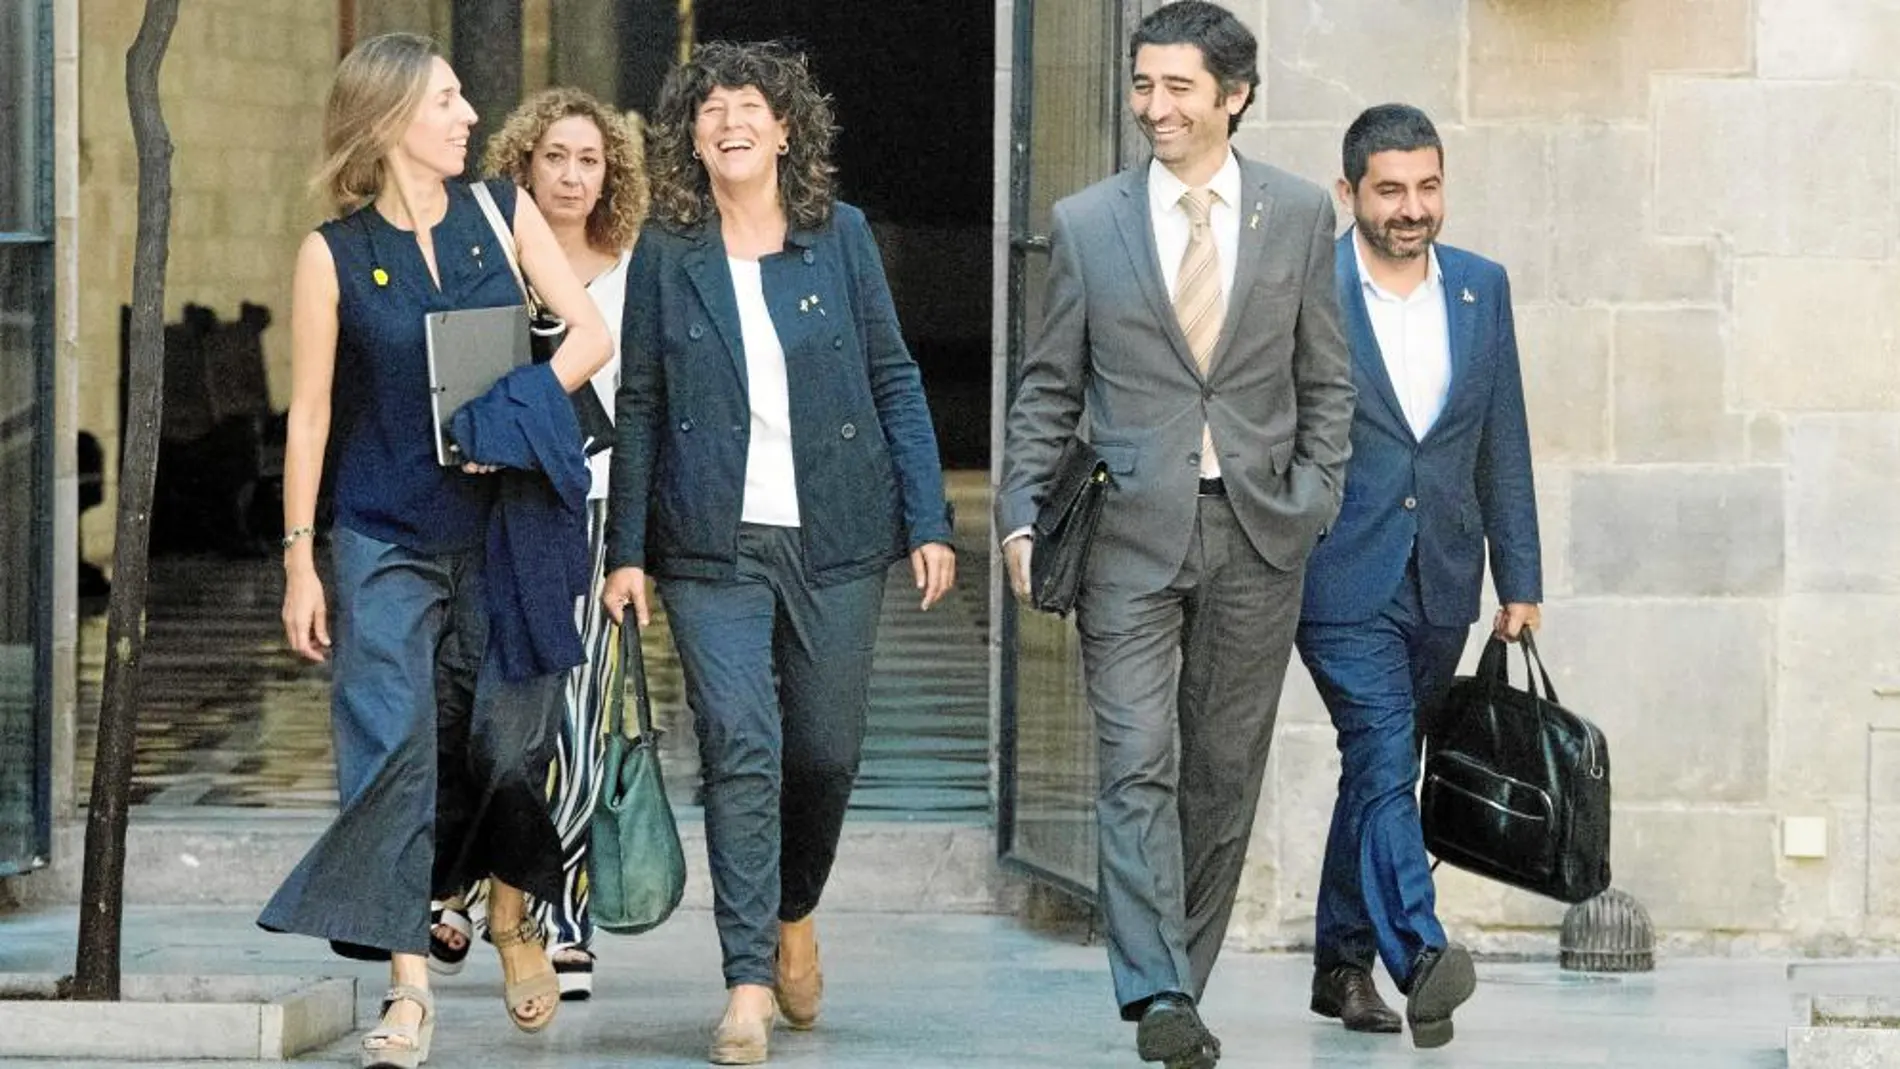 Reunión del Ejecutivo catalán, ayer, con la titular de Justicia, Ester Capella (al fondo a la izquierda) con un grupo de consellers / Foto: Efe